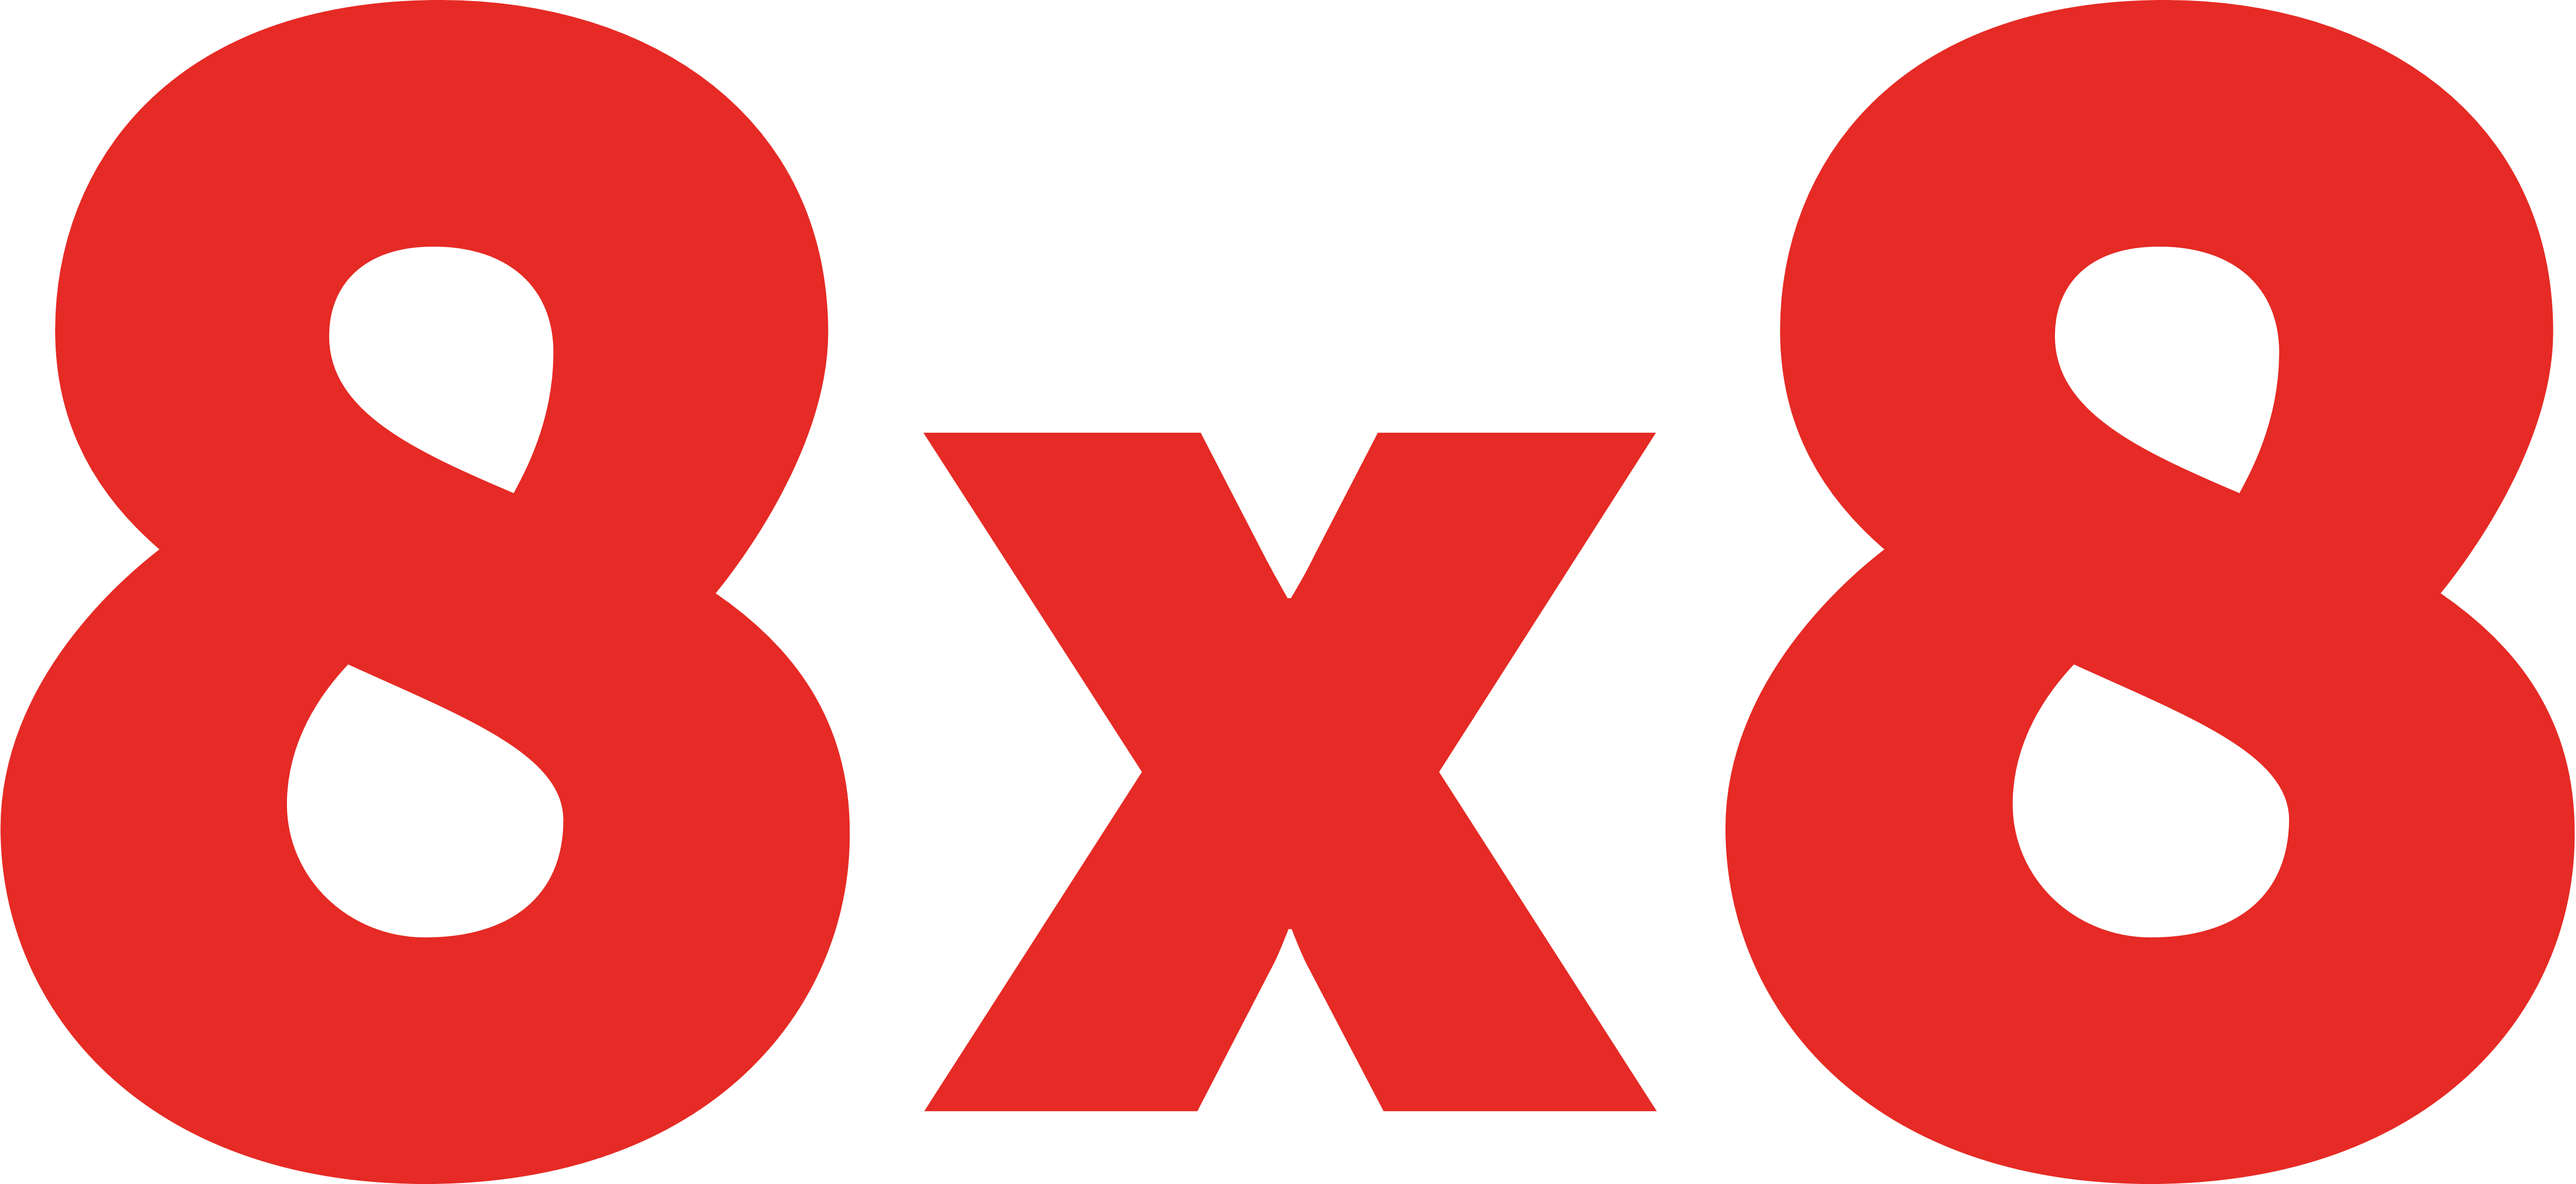 8x8 Logo Im Transparenten Png Und Vektorisierten Svg - vrogue.co